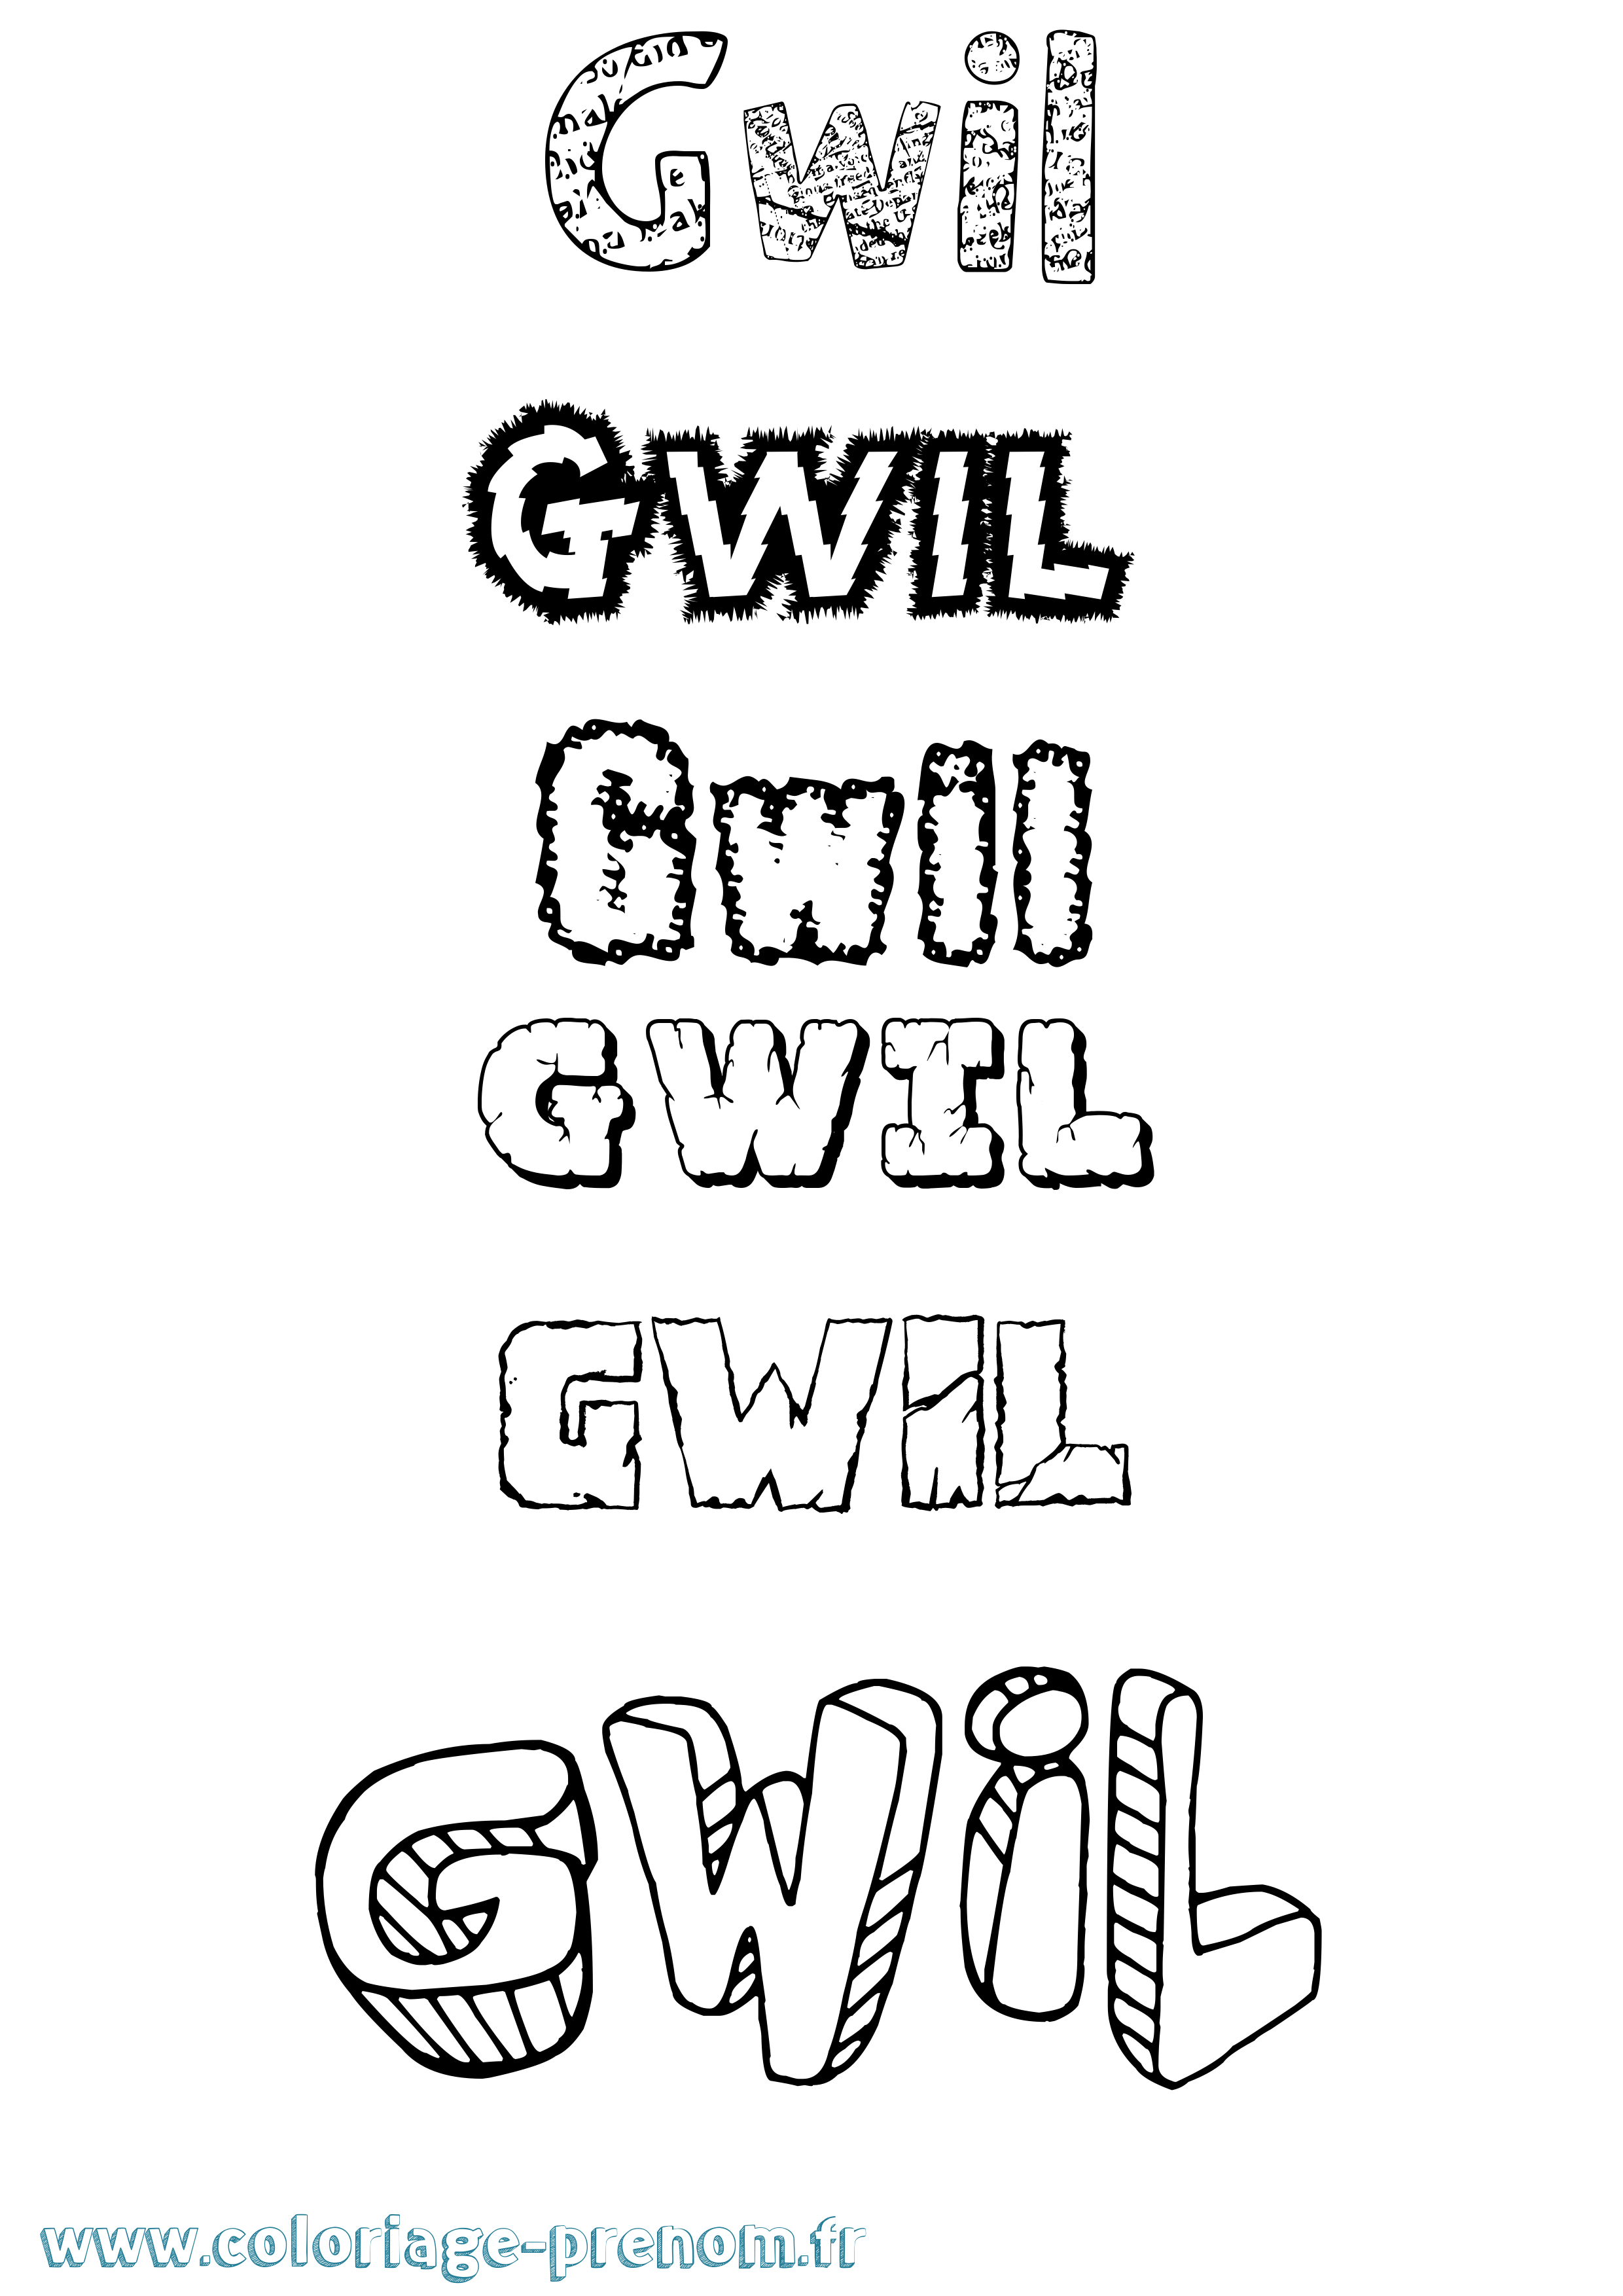 Coloriage prénom Gwil Destructuré